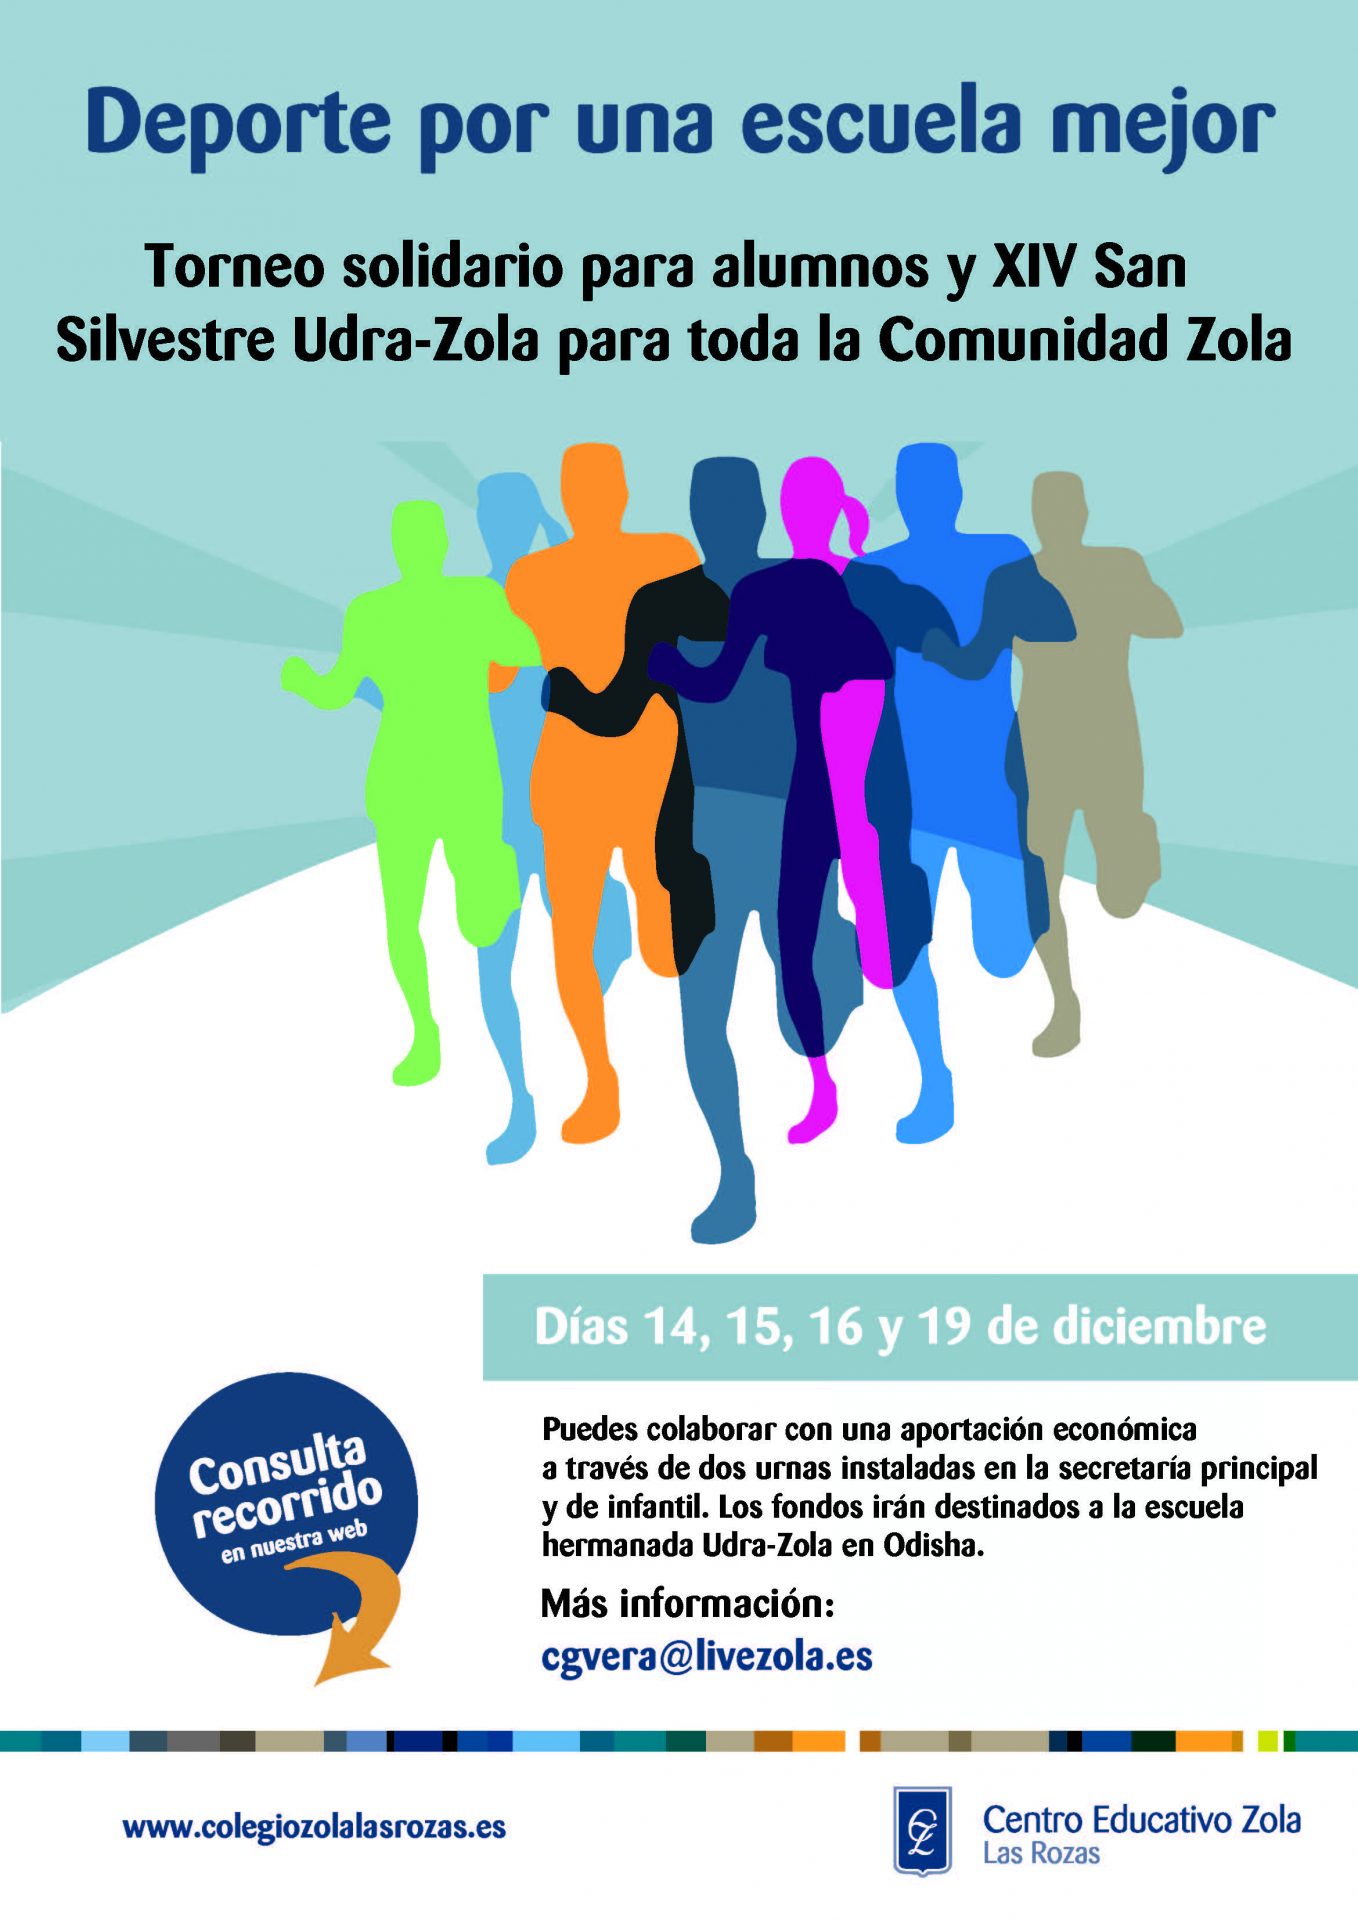 Torneo solidario y XIV San Silvestre Udra-Zola: Deporte por una escuela mejor